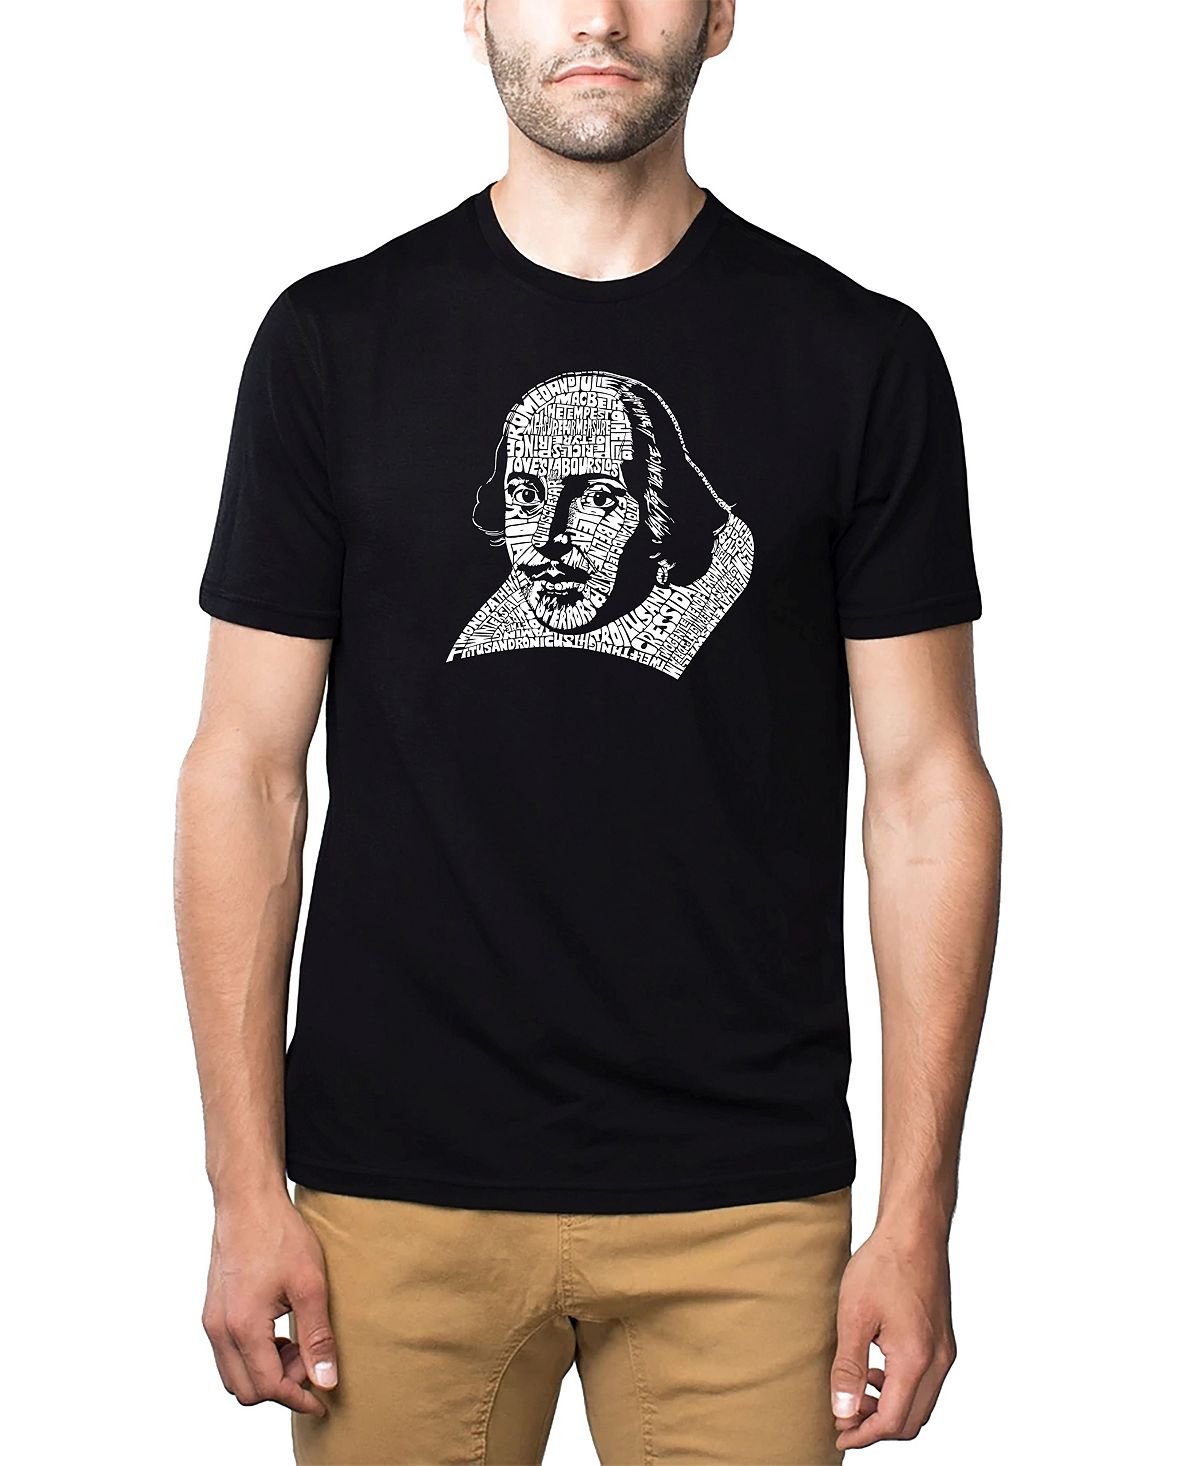 Мужская футболка премиум-класса word art - шекспир LA Pop Art, черный йейтс уильям батлер великие поэты мира